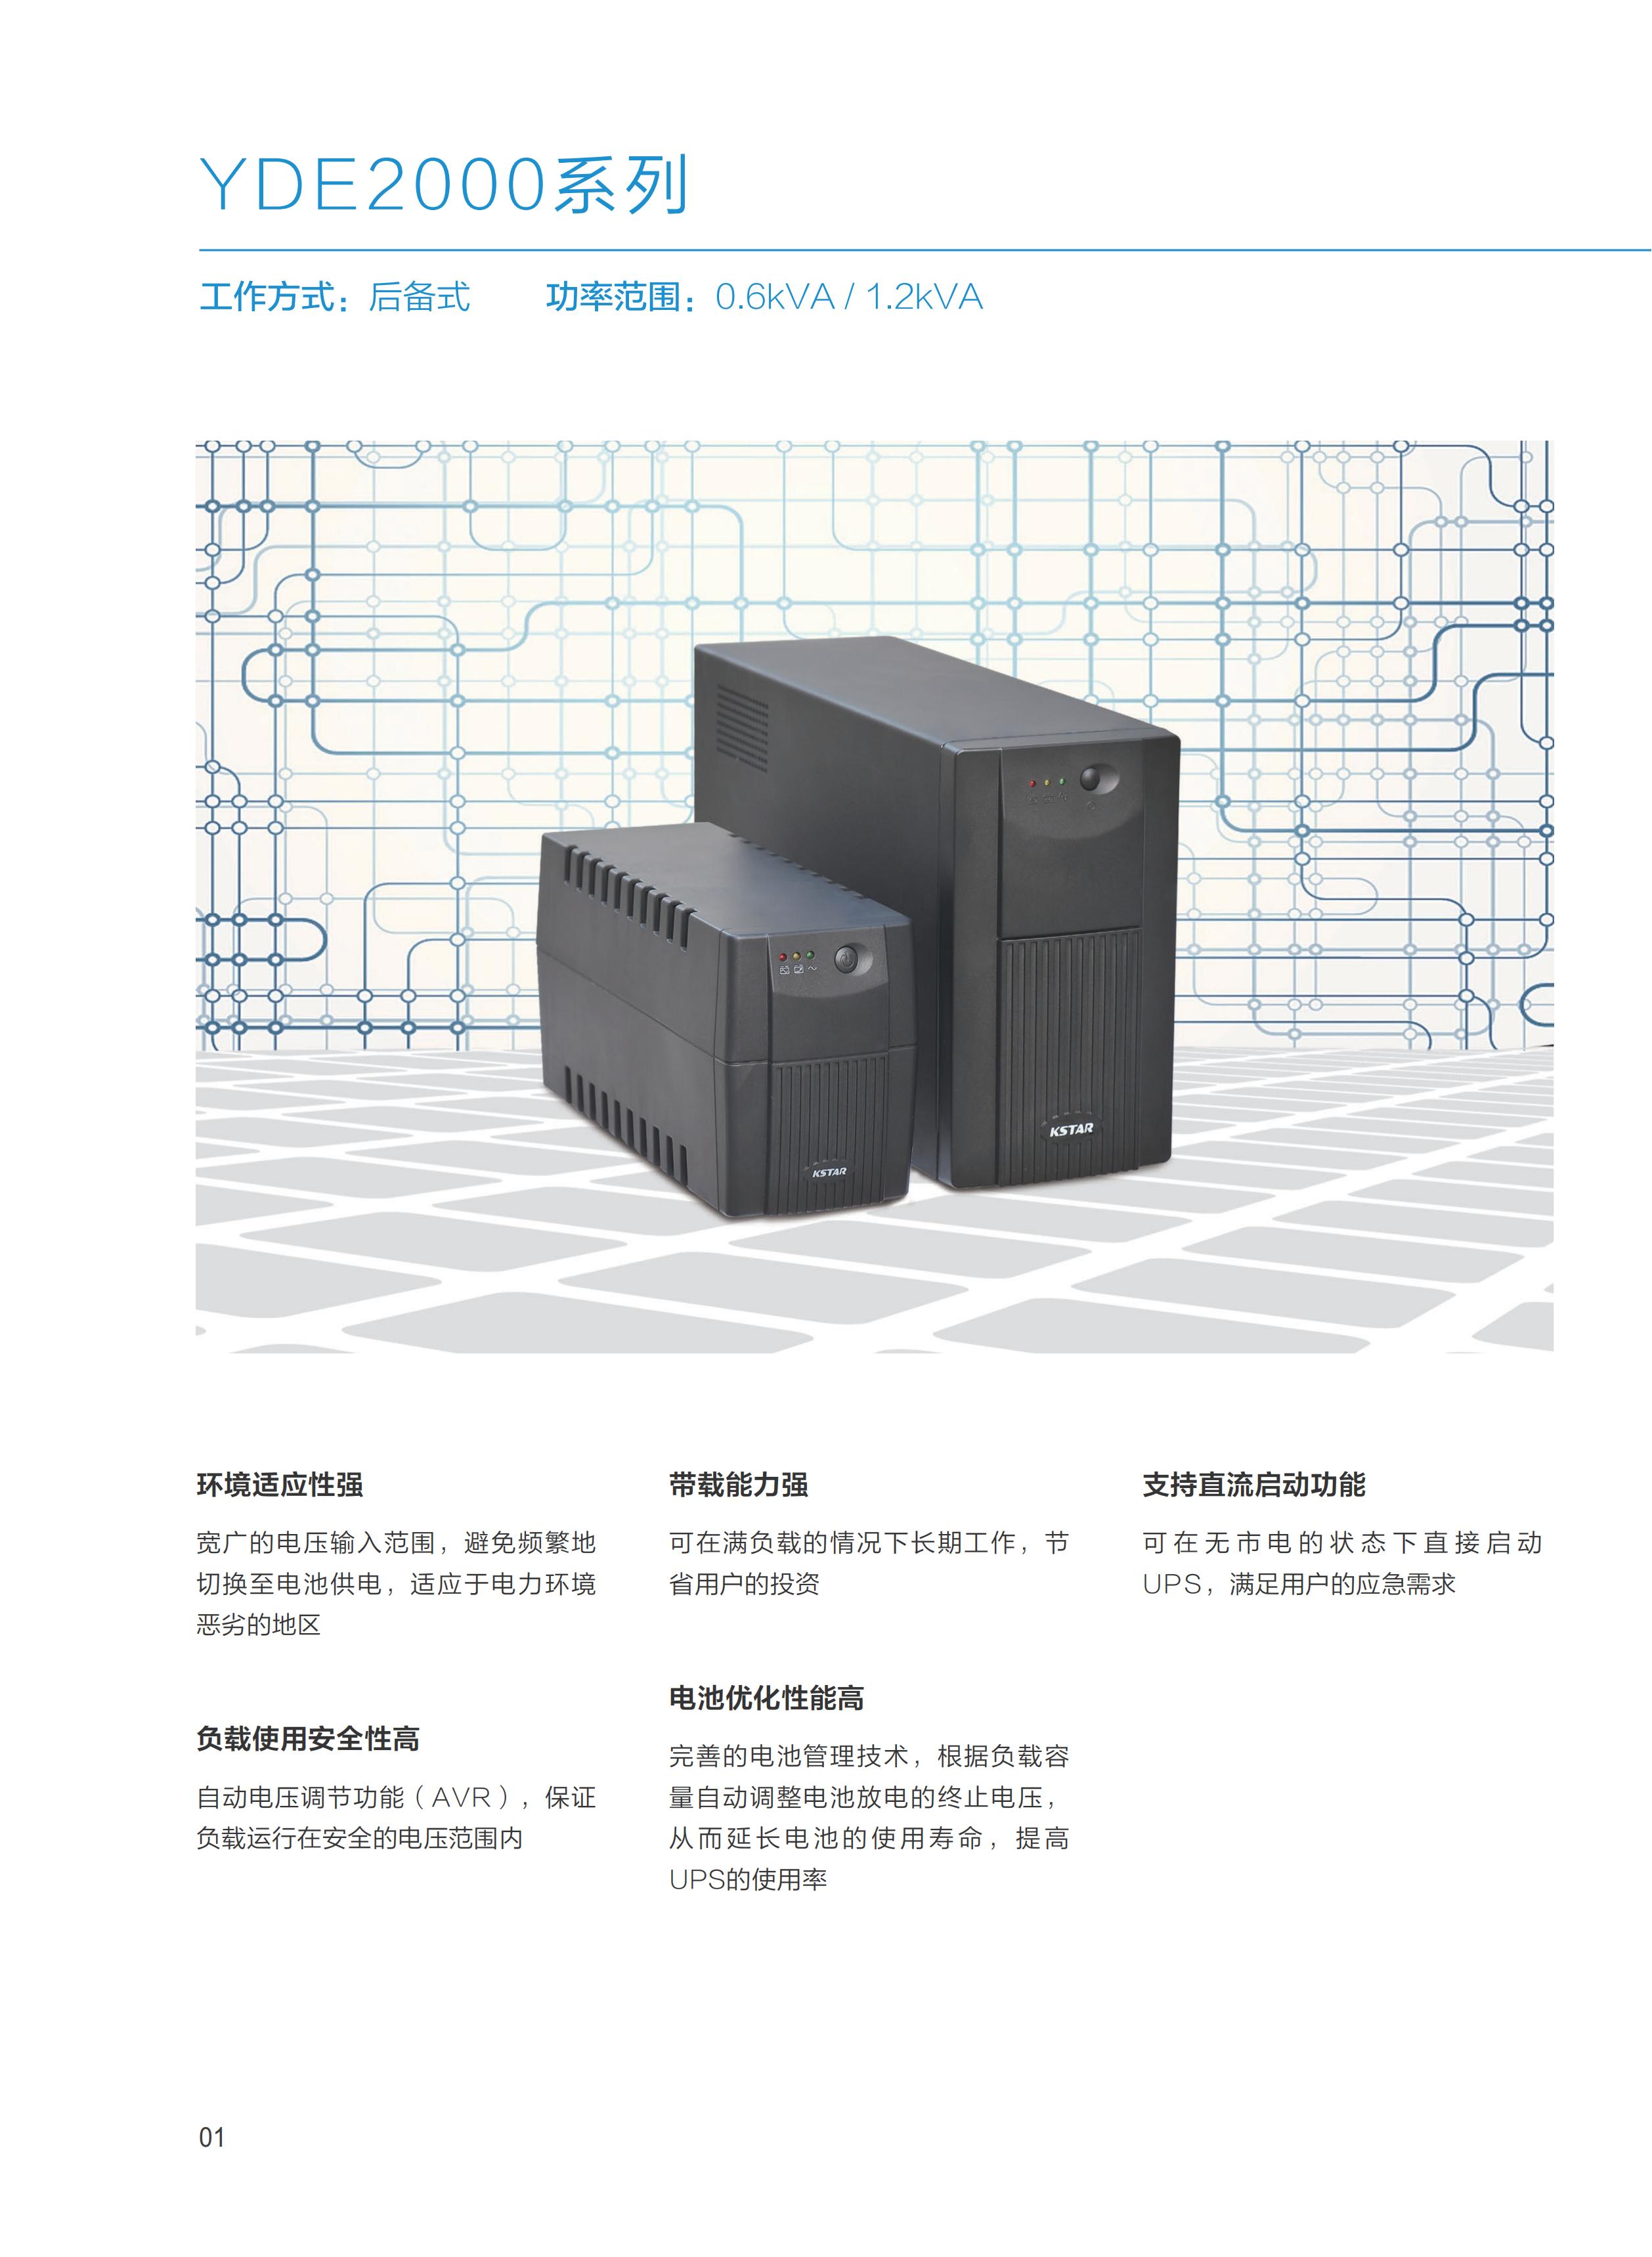 02 科士达YDC系列中小功率UPS产品（20180719）(1)_02.jpg